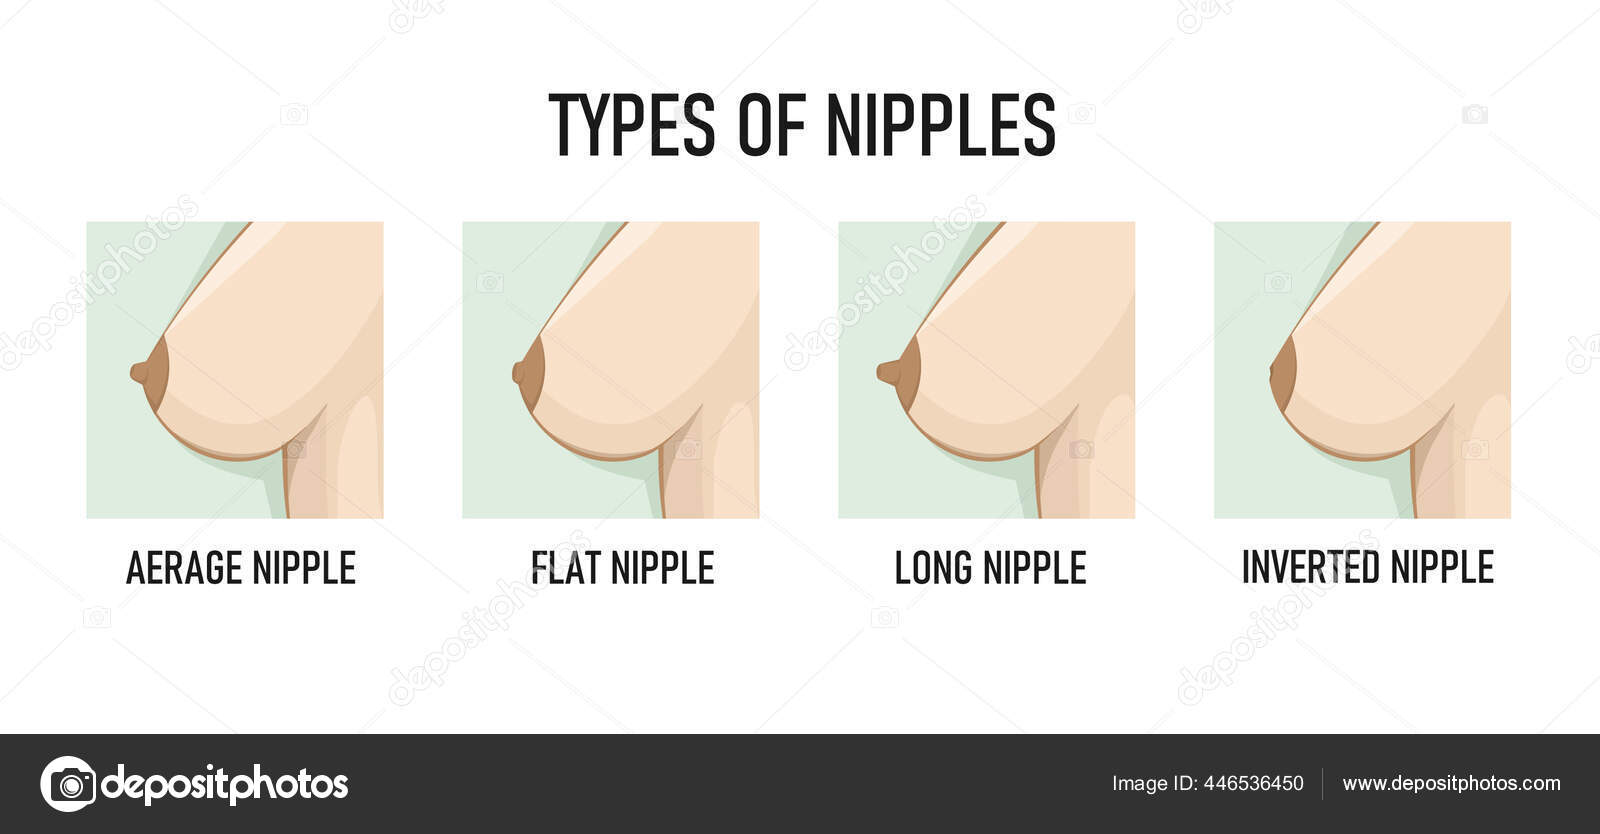 https://st2.depositphotos.com/1105219/44653/v/1600/depositphotos_446536450-stock-illustration-types-of-nipples-vector-illustration.jpg